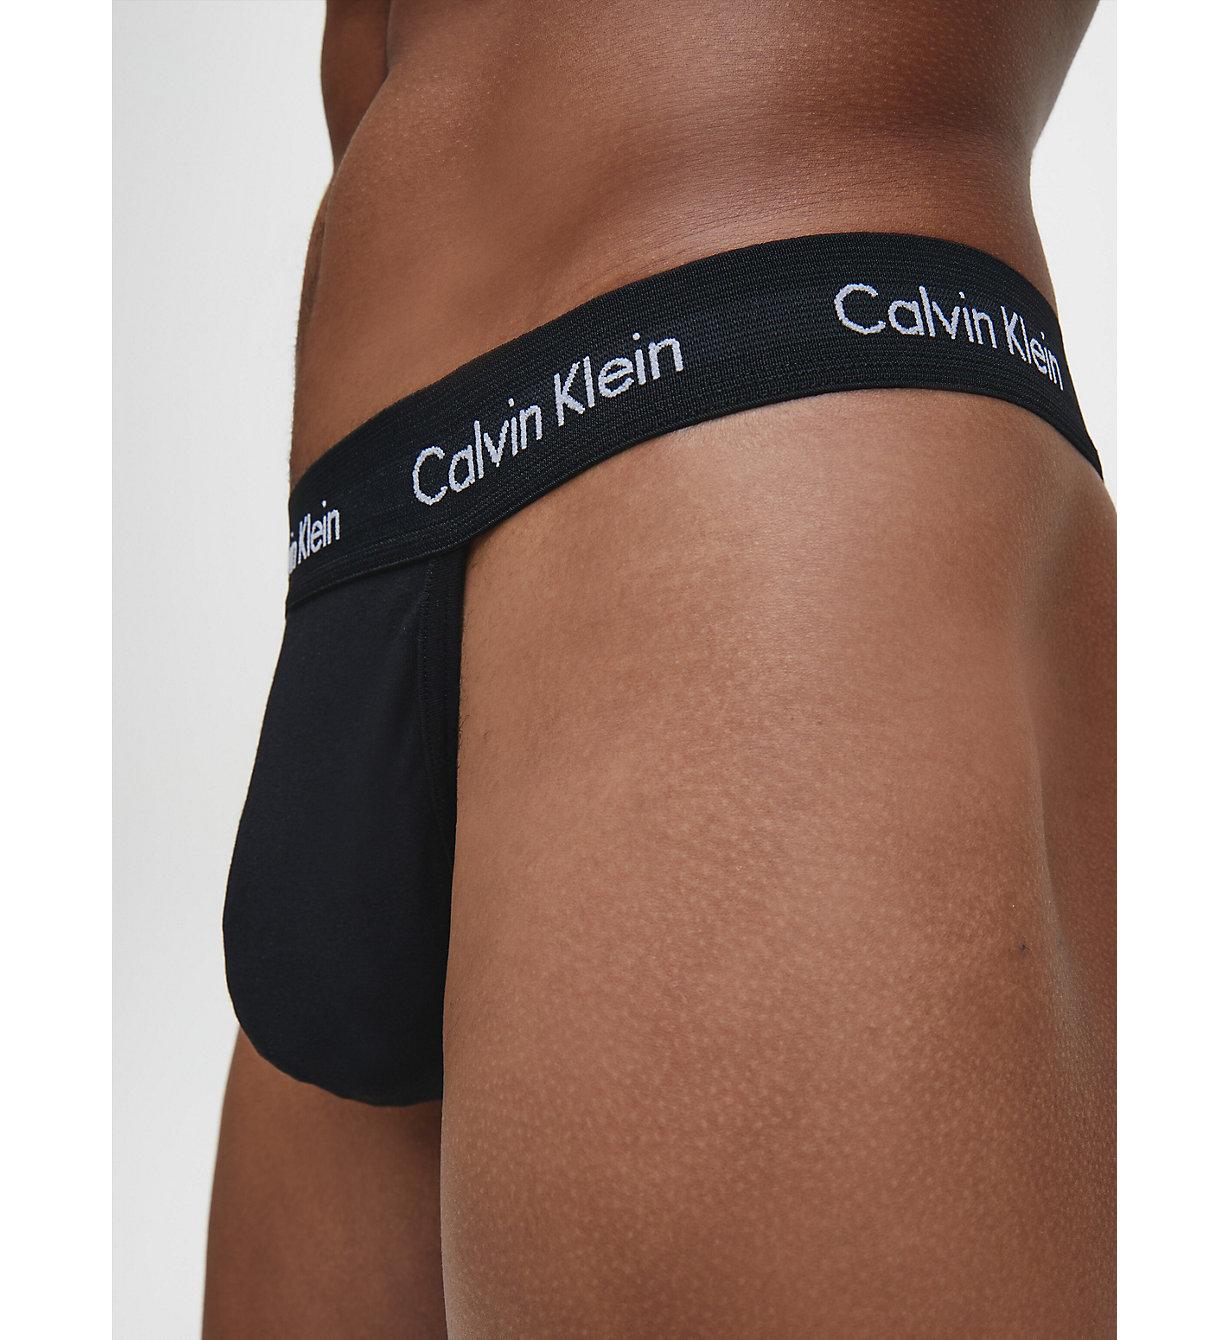 Calvin Klein String Men Reliable Quality, 44% OFF | evidenciamed.com.br